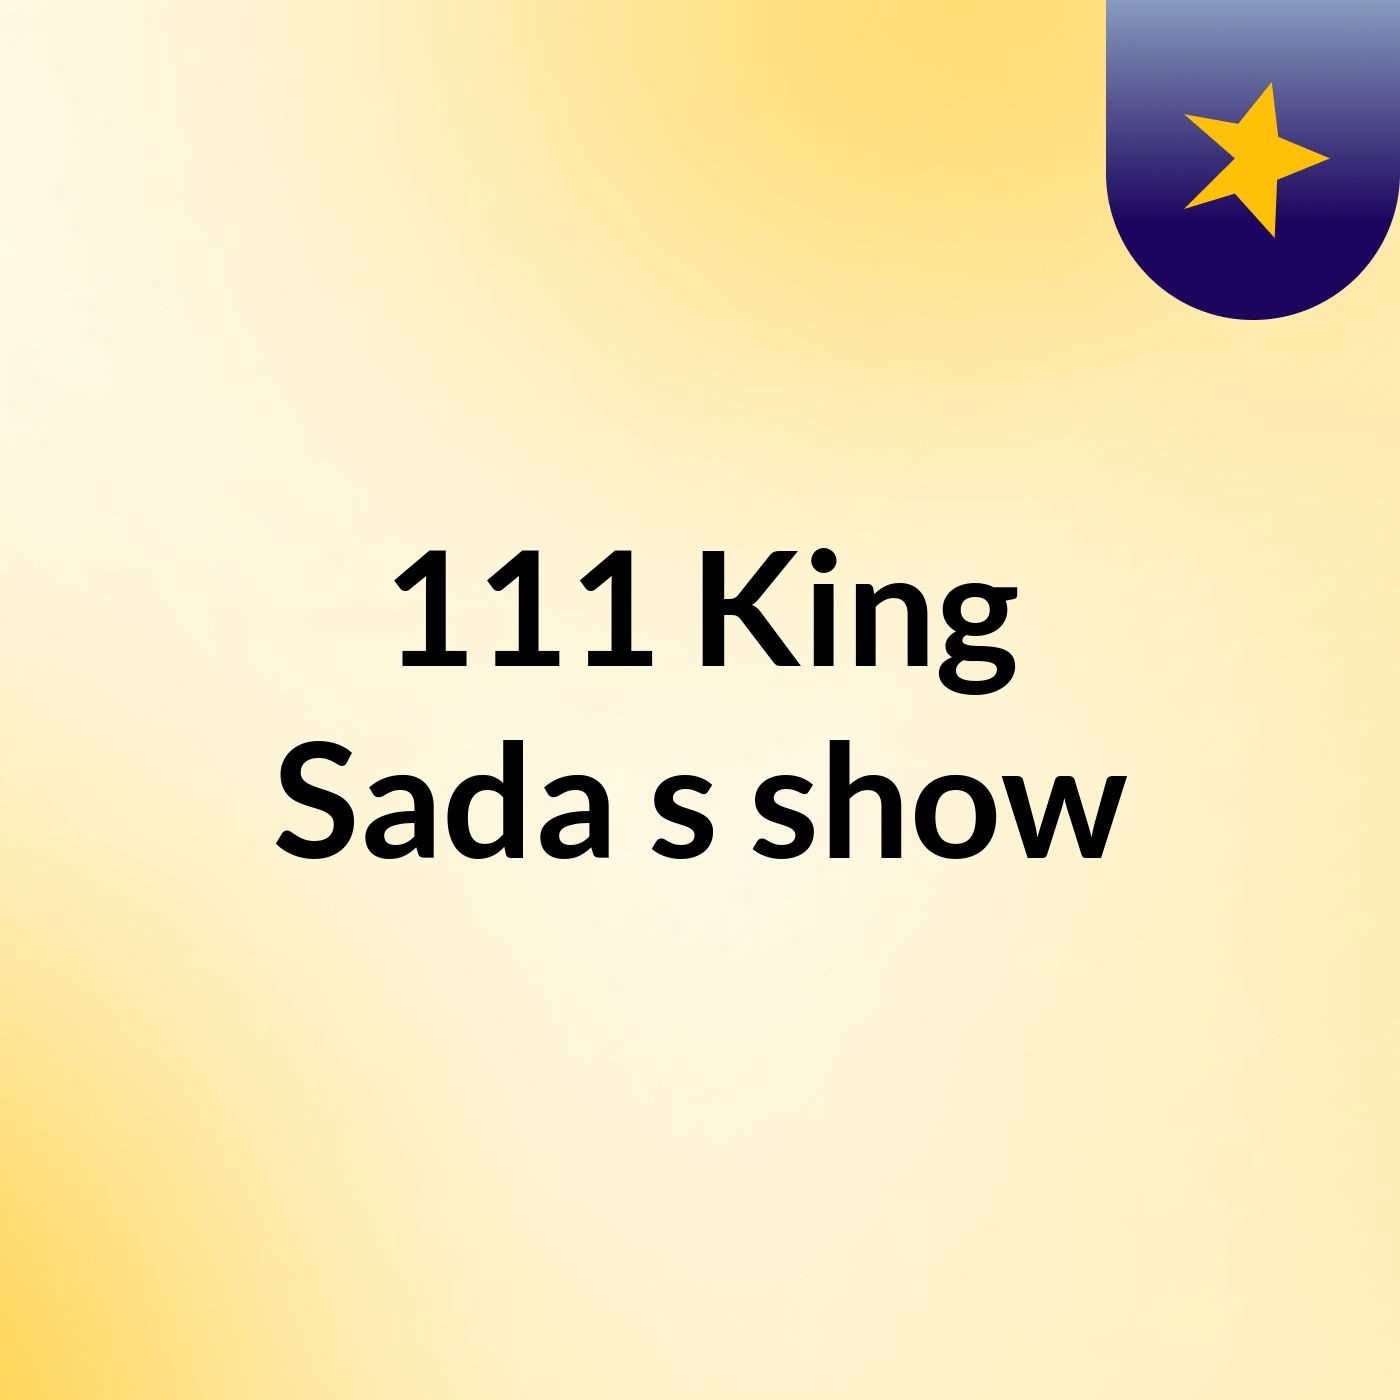 111 King Sada's show